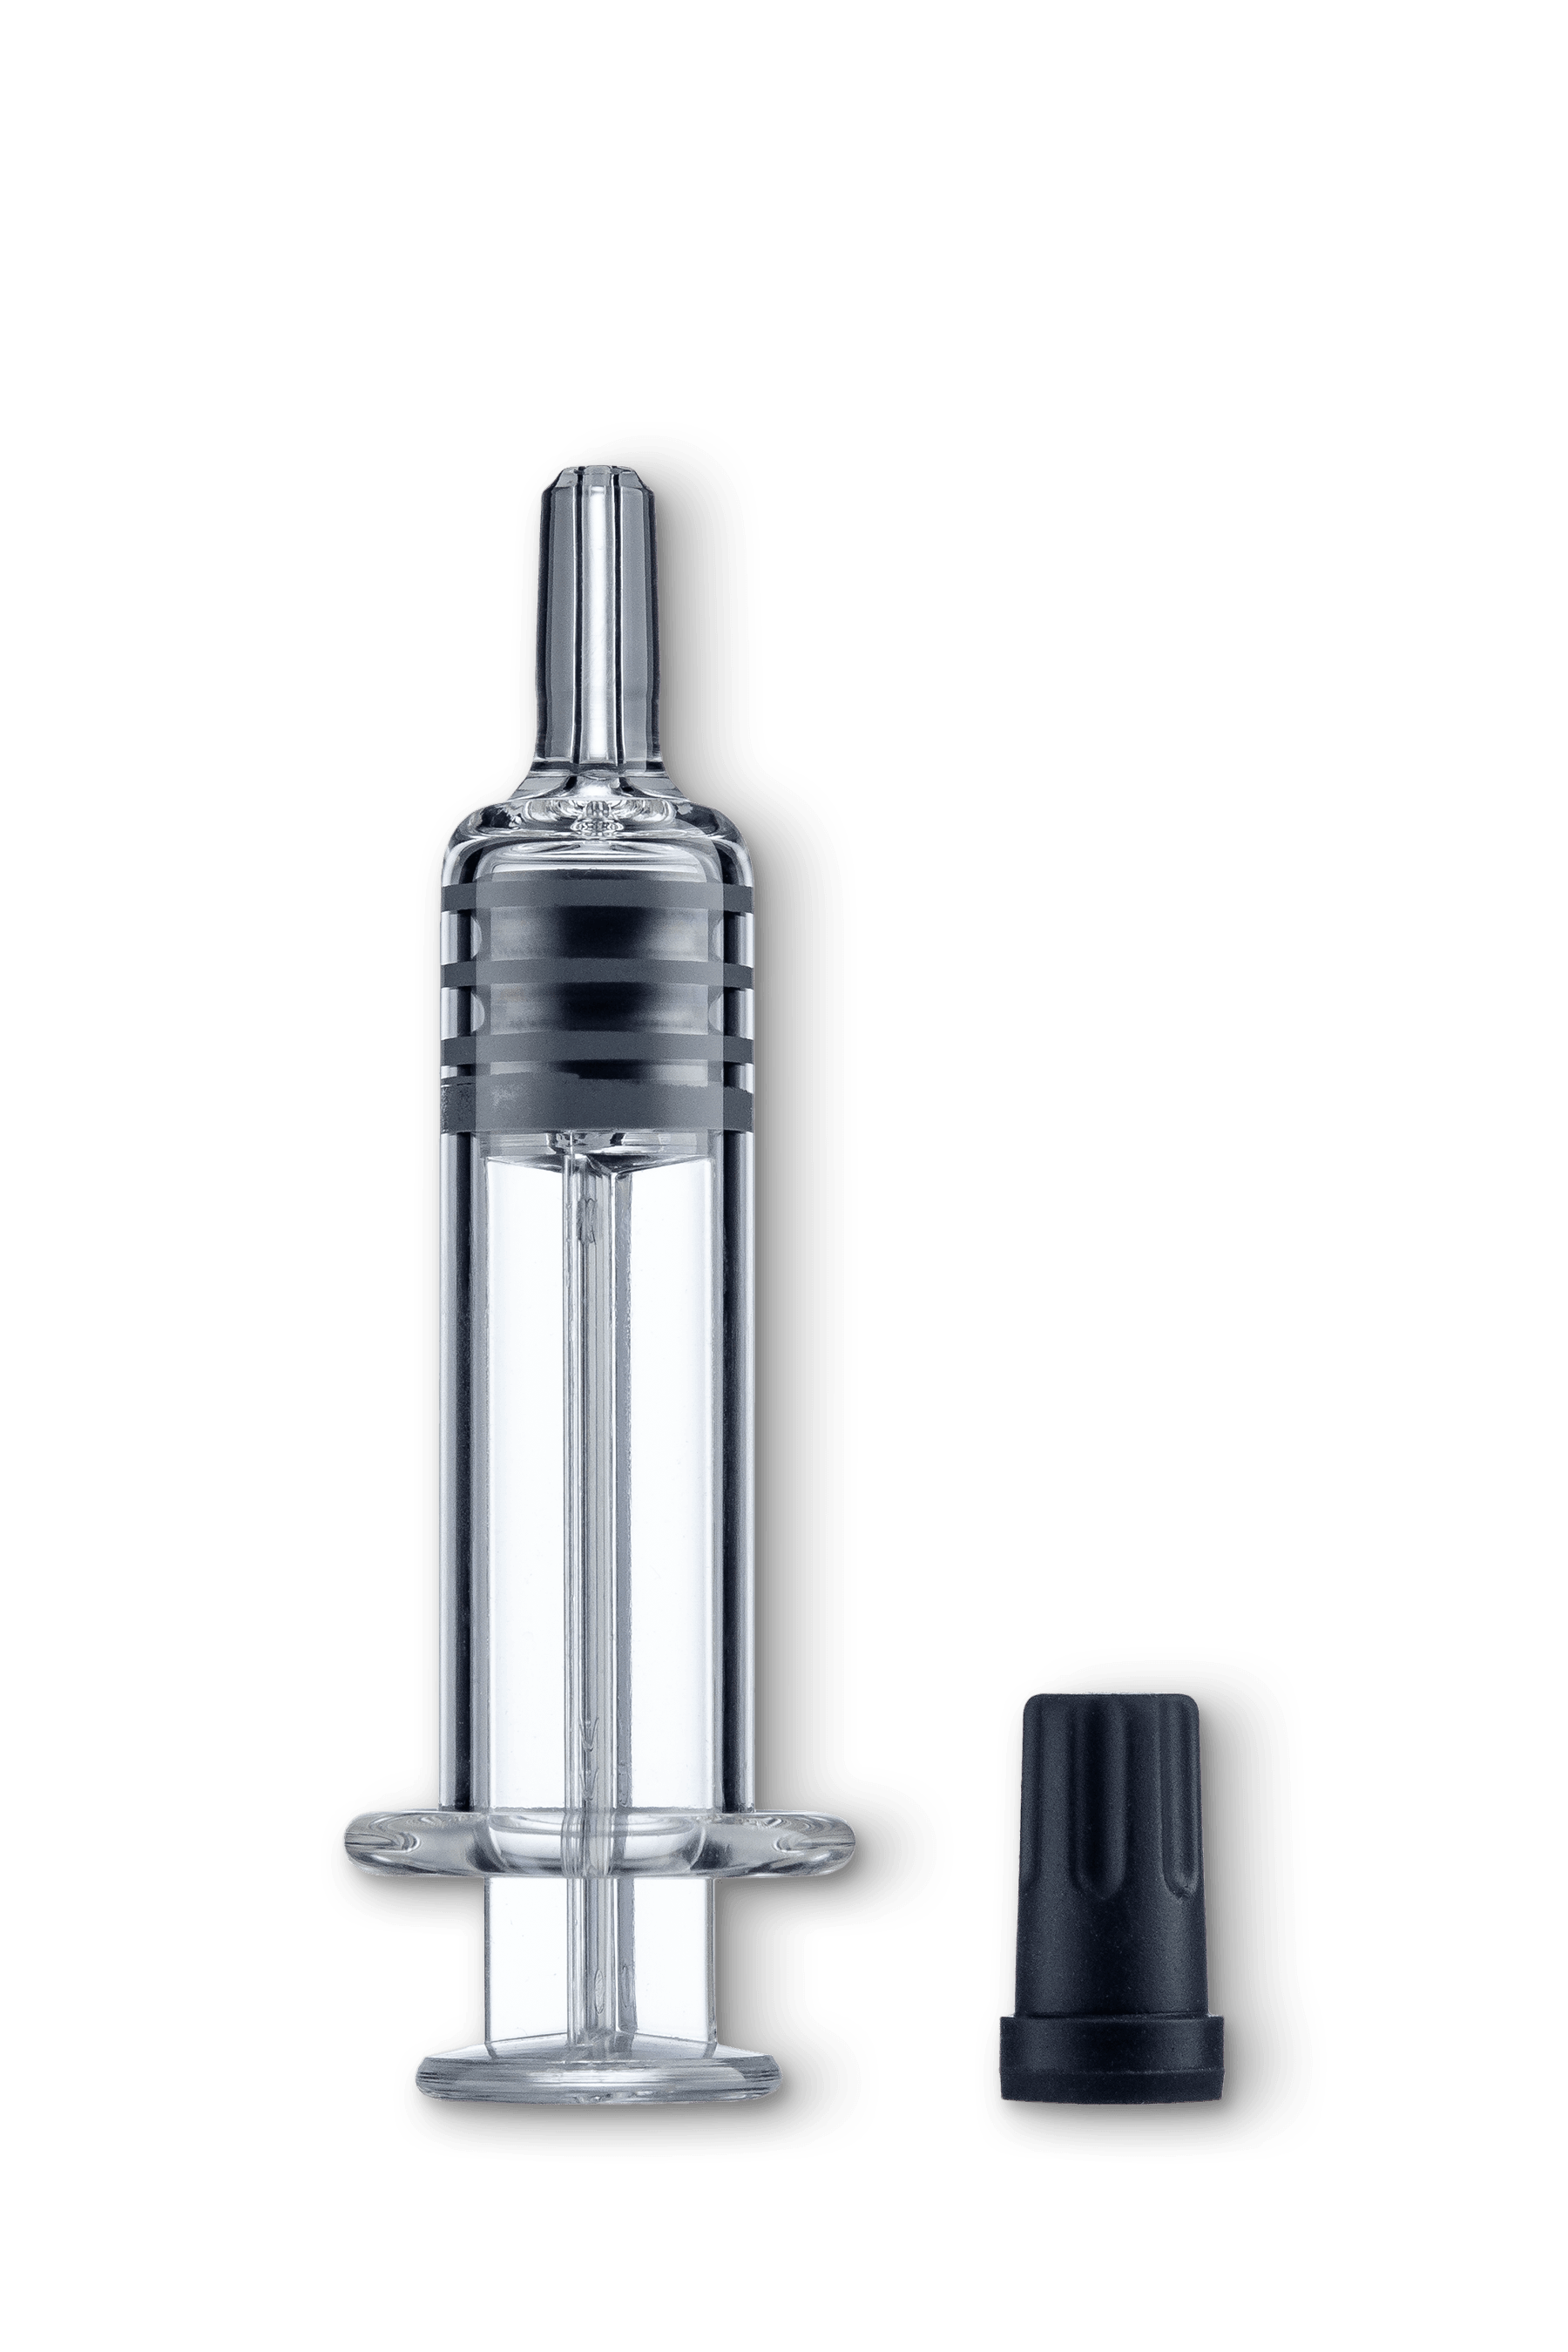 Cbd glass syringe